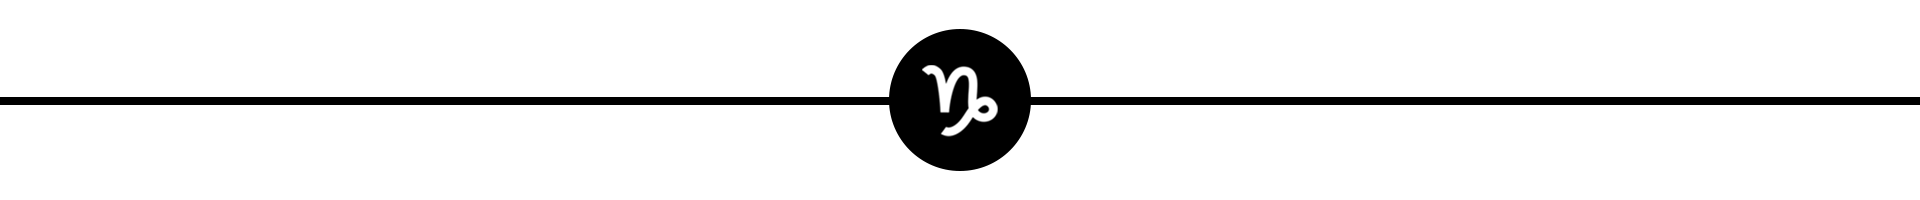 Capricorn glyph